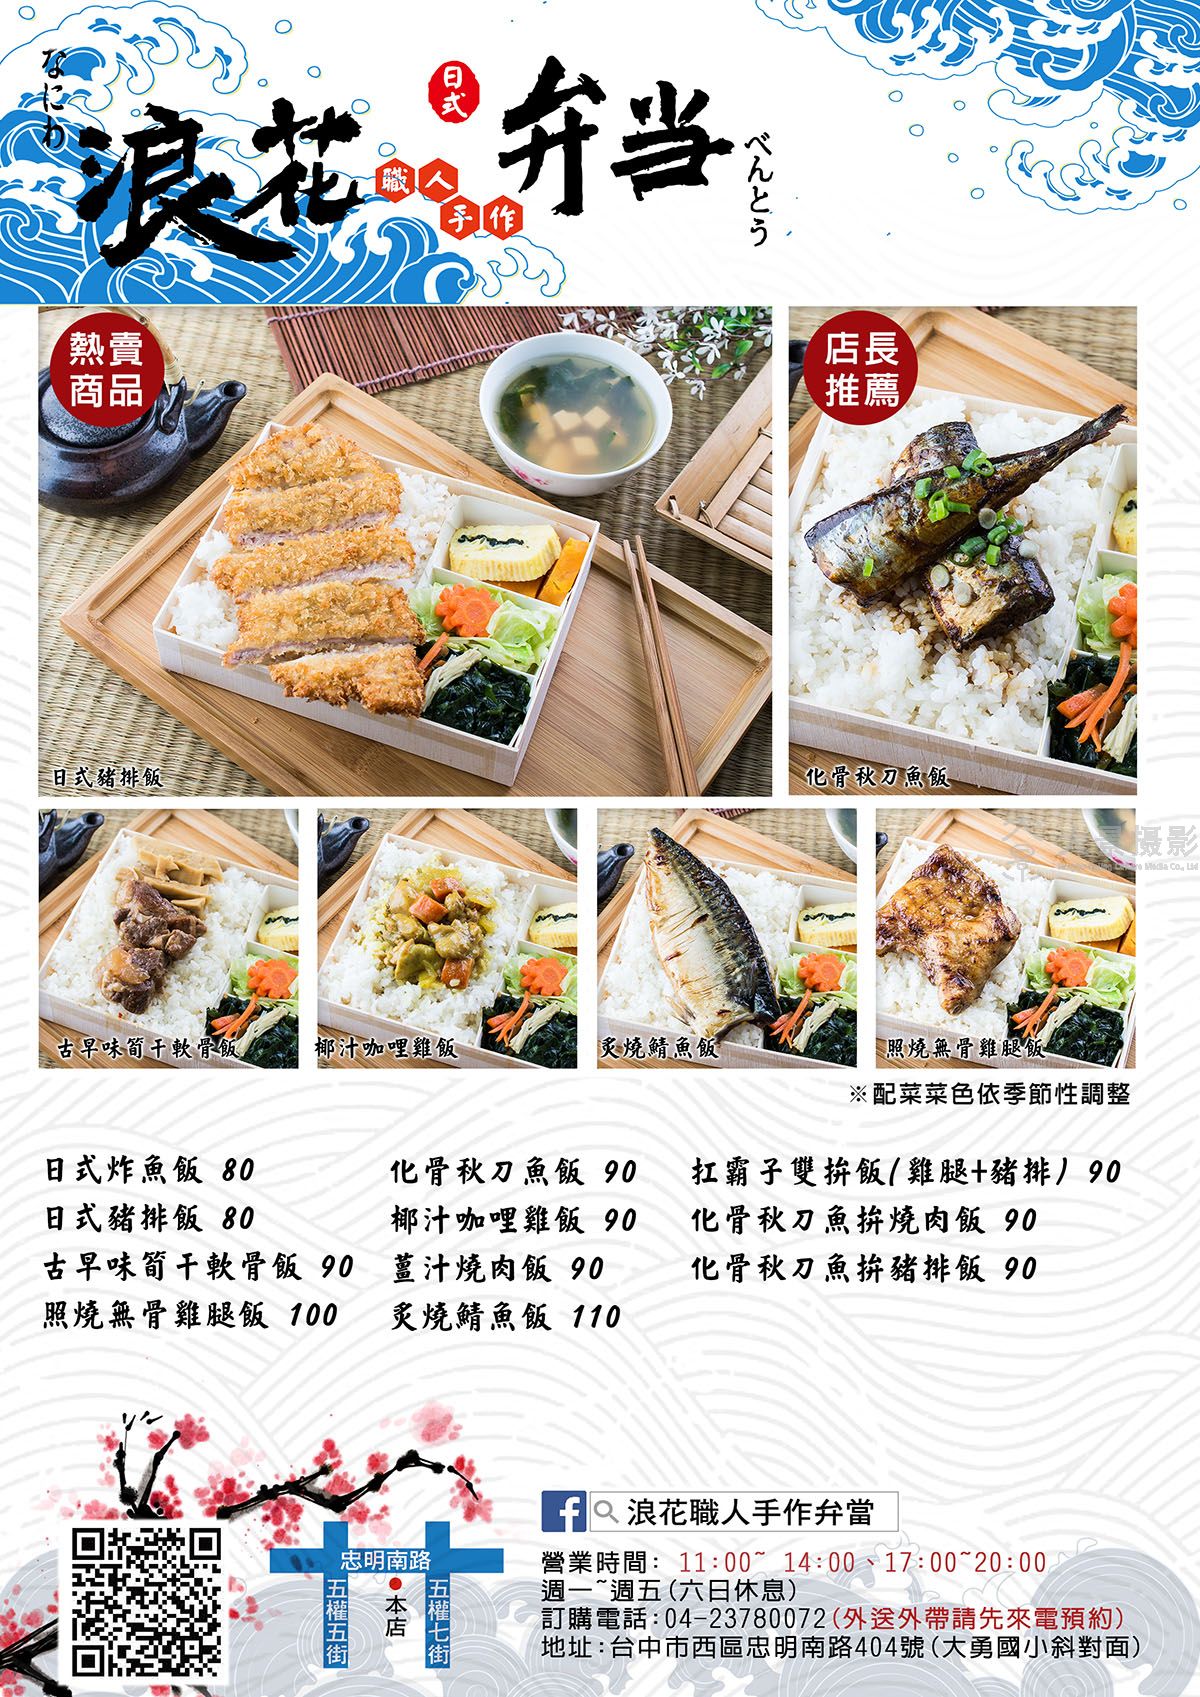 上海菜单设计联系方式